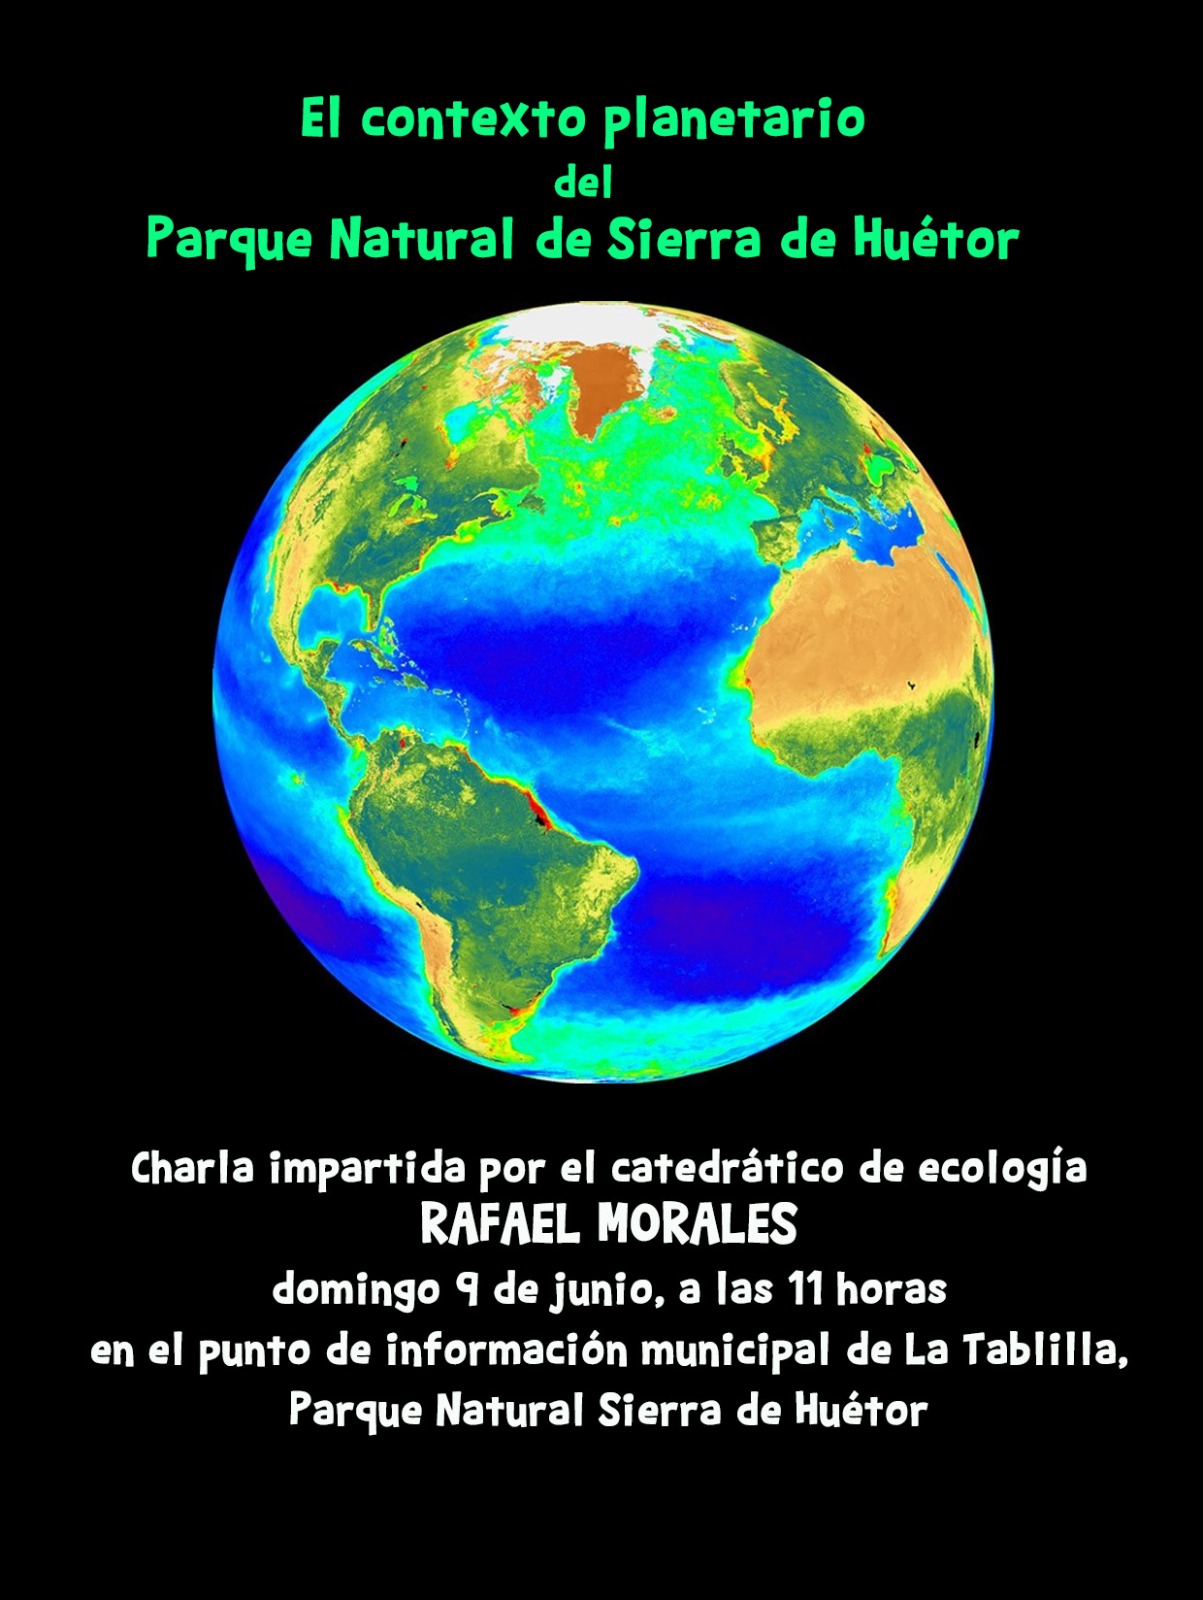 Cartel conferencia "El contexto planetario del Parque Natural de Sierra de Huetor", Rafael Morales